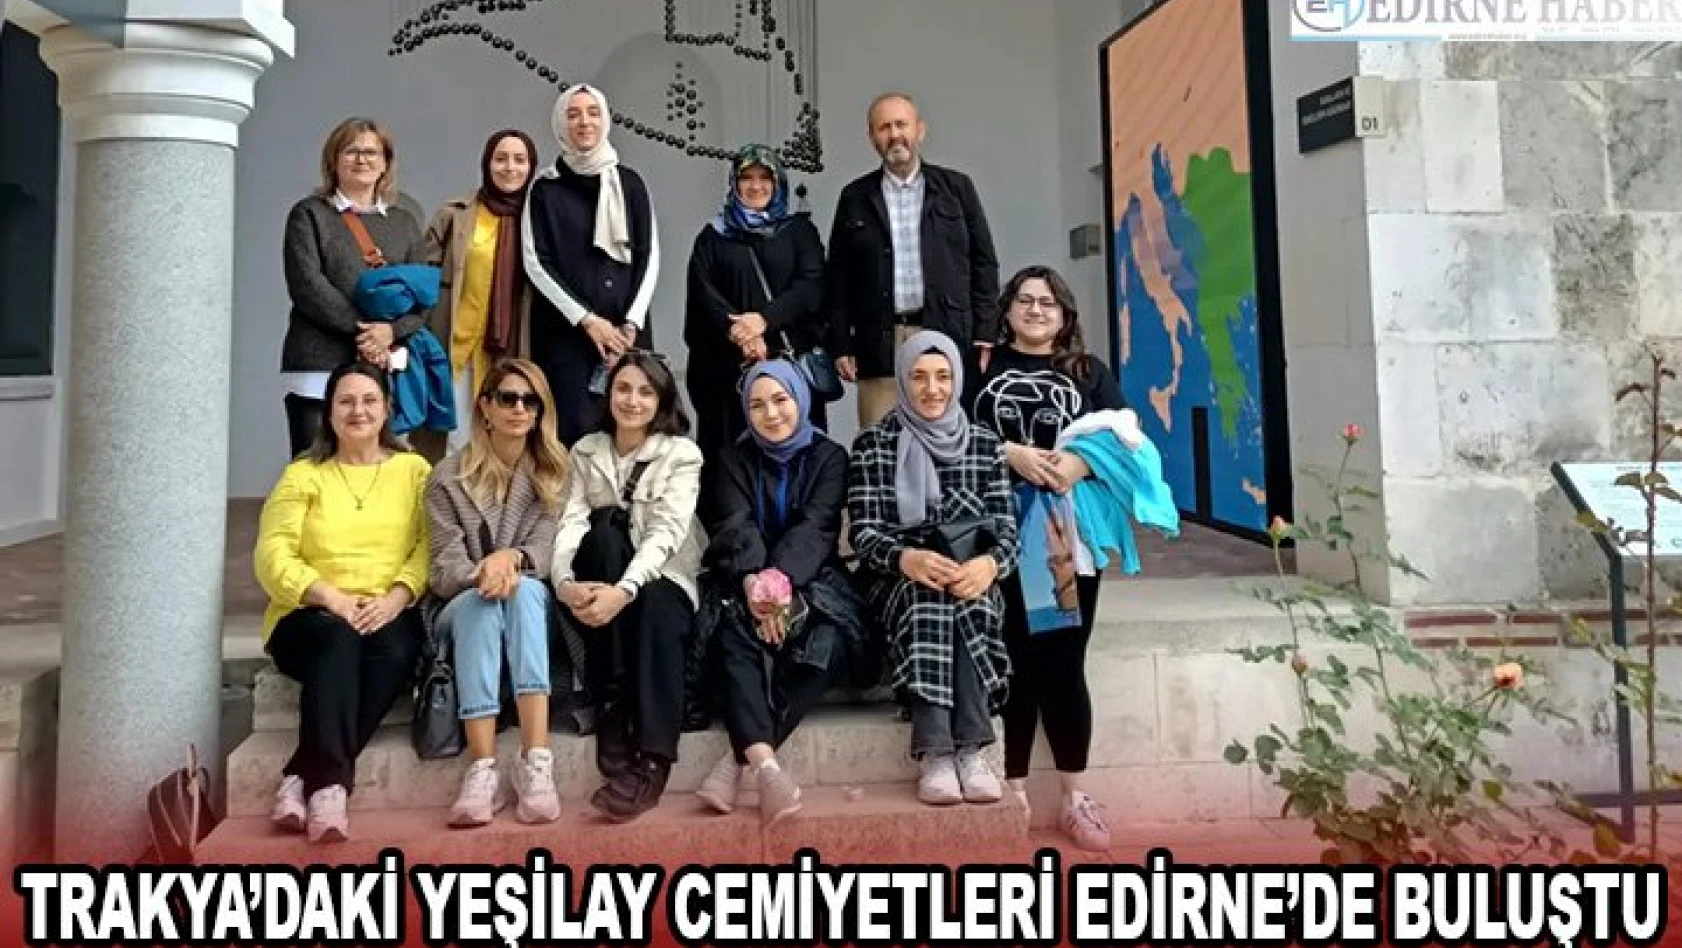 Trakya'daki Yeşilay Cemiyetleri Edirne'de buluştu